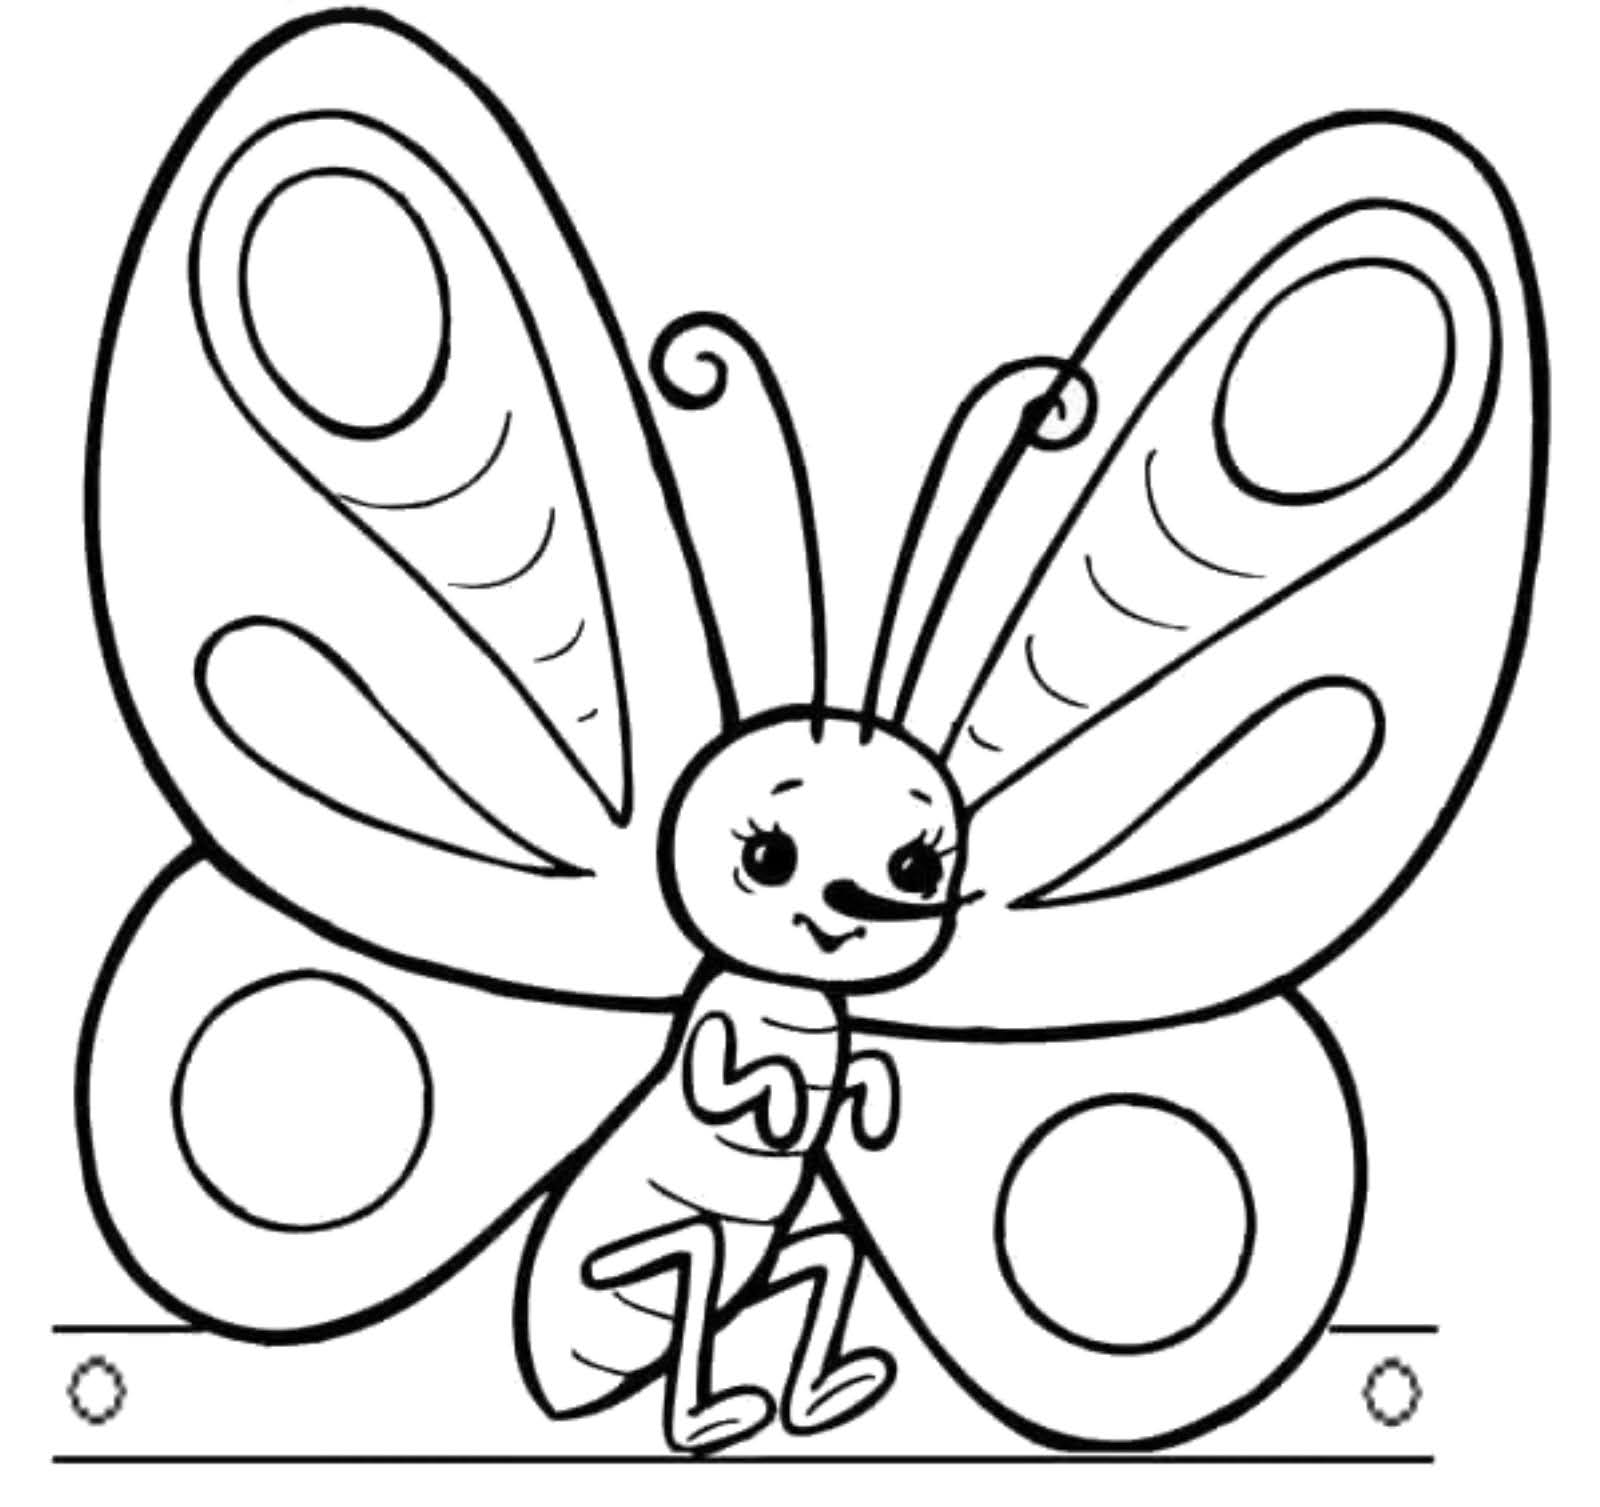 Раскраски для детей 4 5 бабочки. Бабочка раскраска для детей. Насекомые раскраска для детей. Бабочка раскраска для малышей. Детские раскраски бабочки.